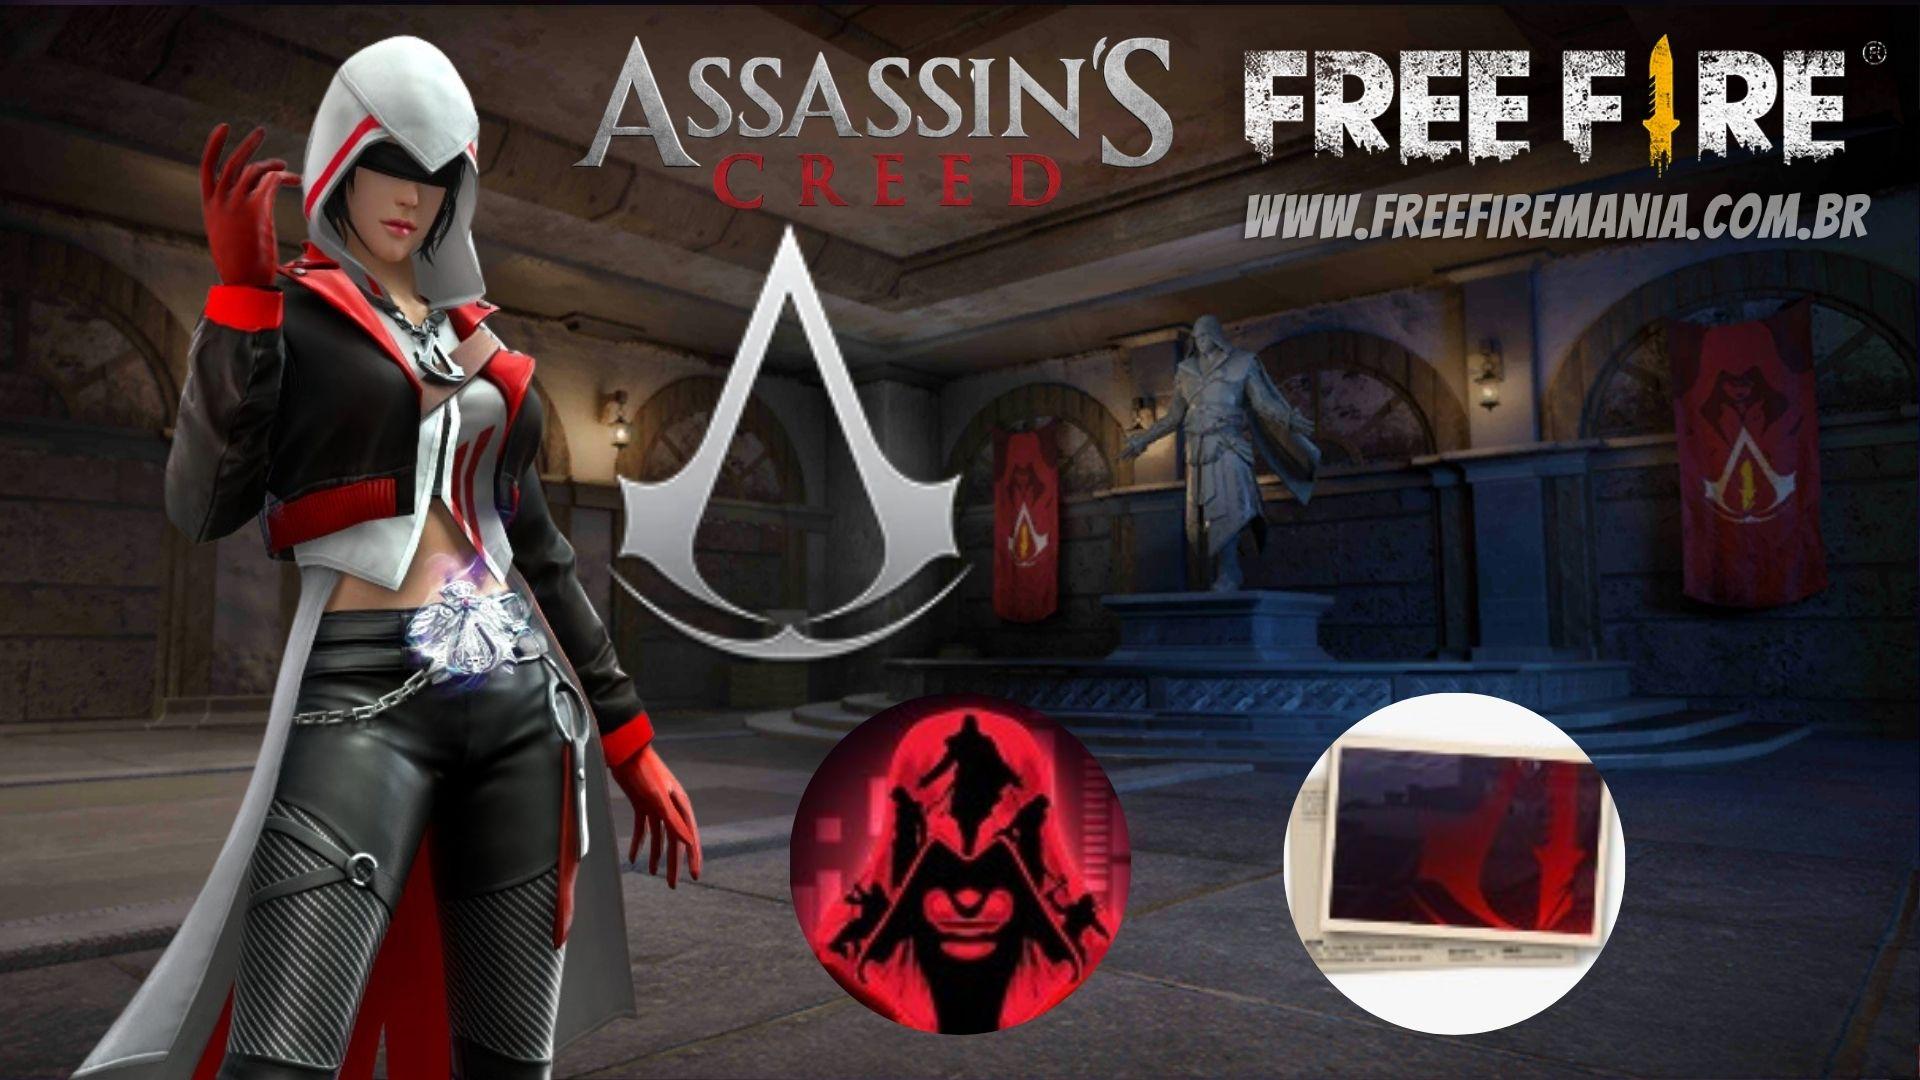 Free Fire e Assassin's Creed: como pegar a skin Irmandade Sombria